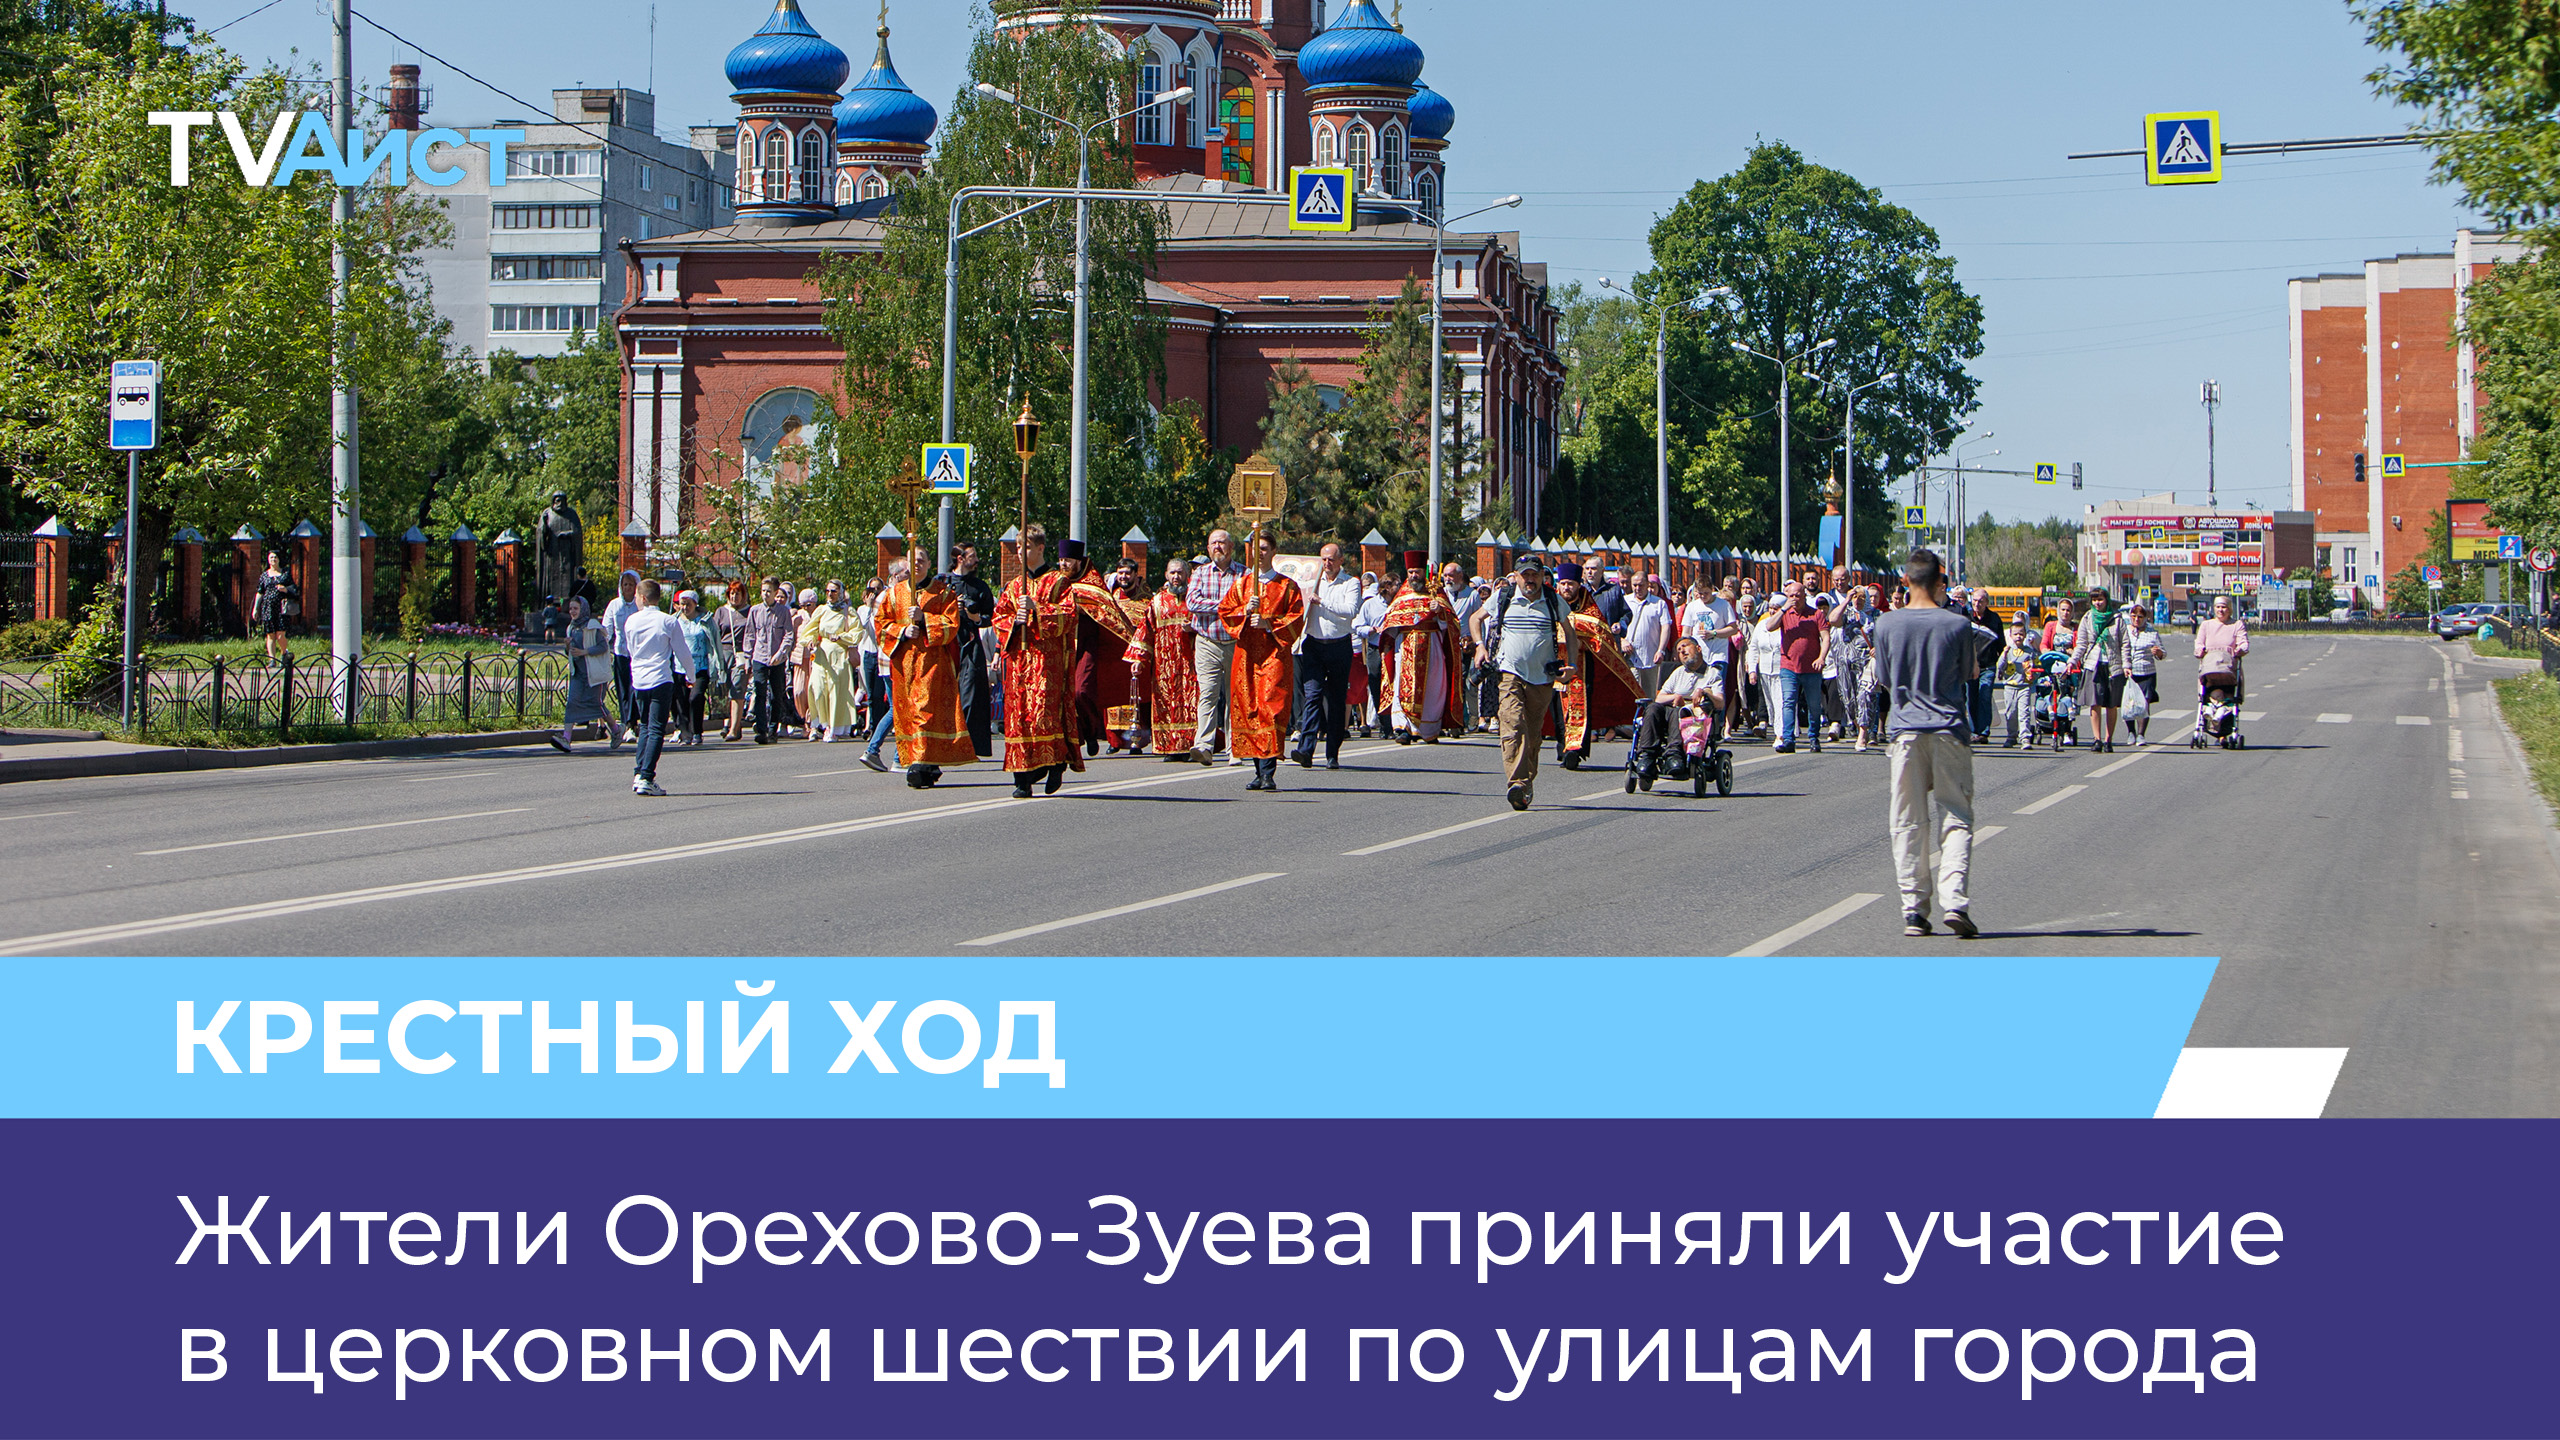 Жители Орехово-Зуева приняли участие в церковном шествии по улицам города